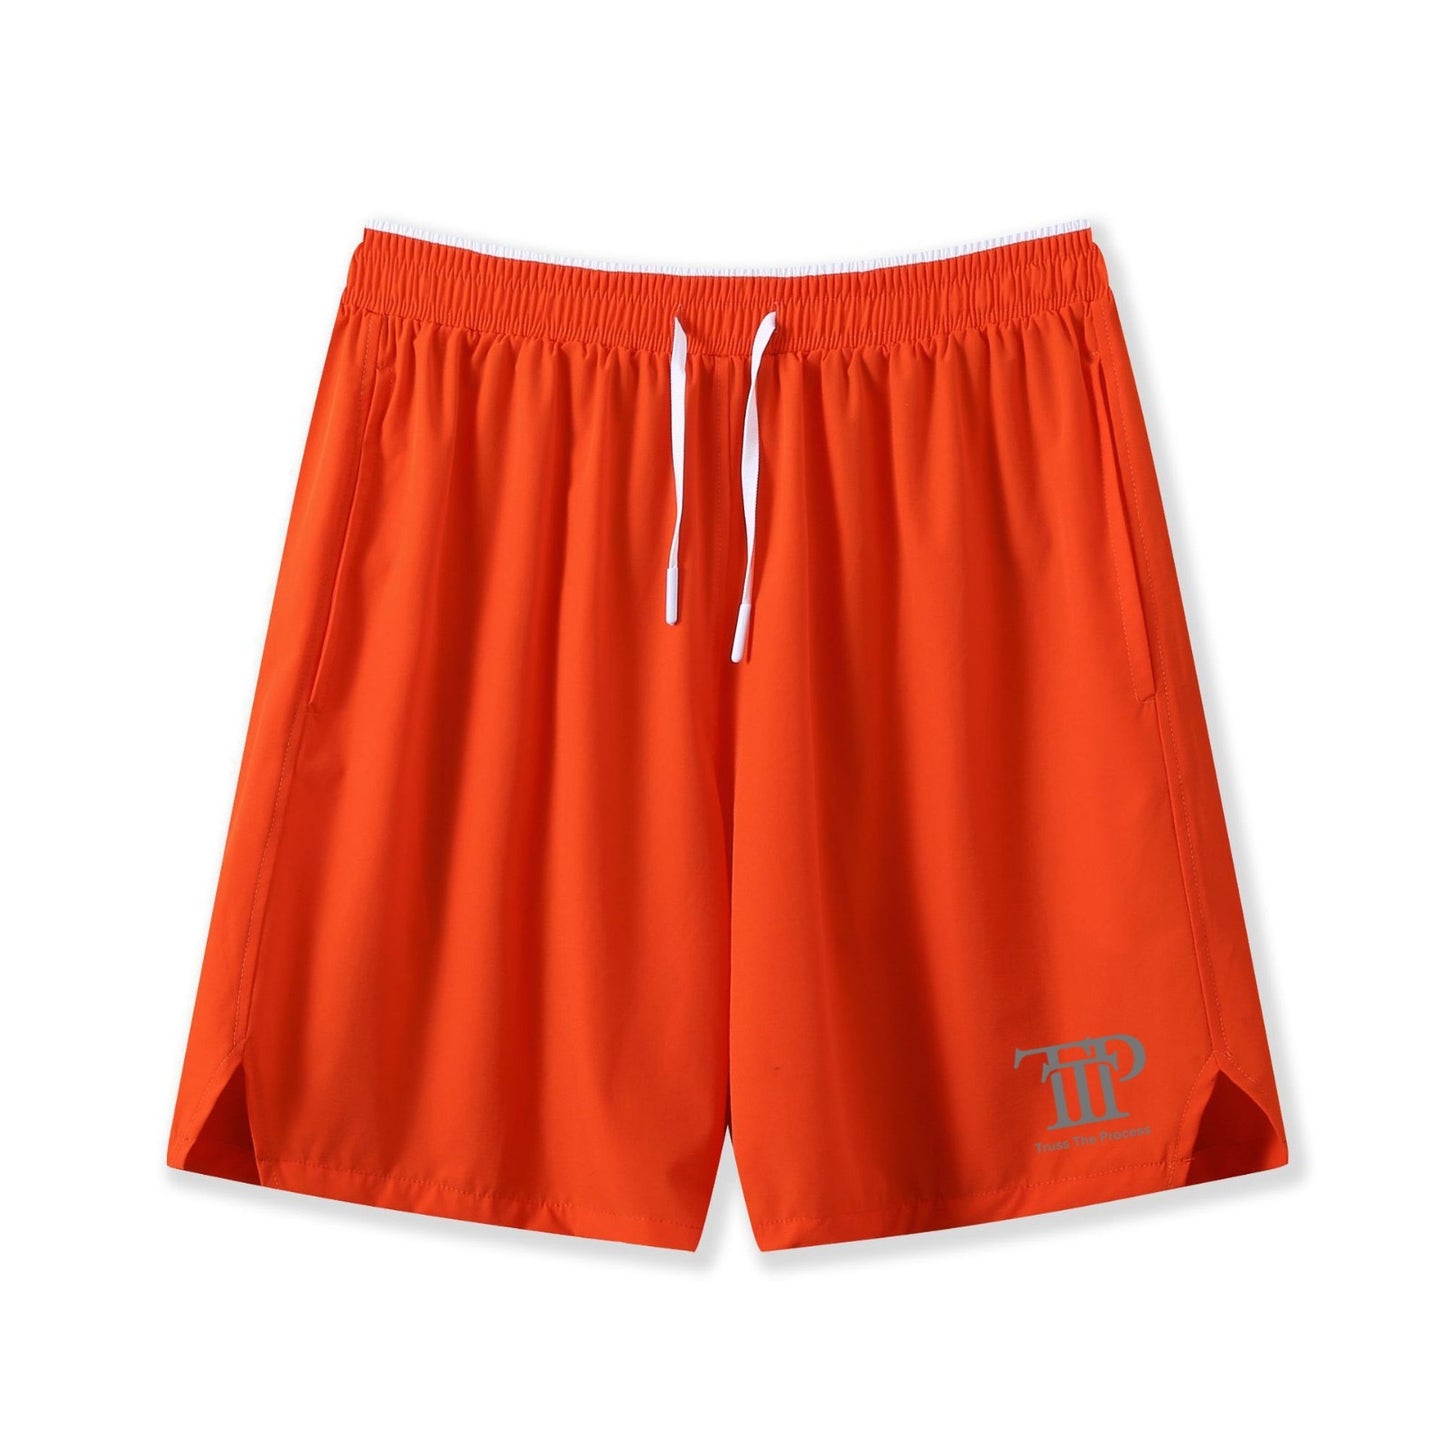 Orange Sporting 7" Shorts